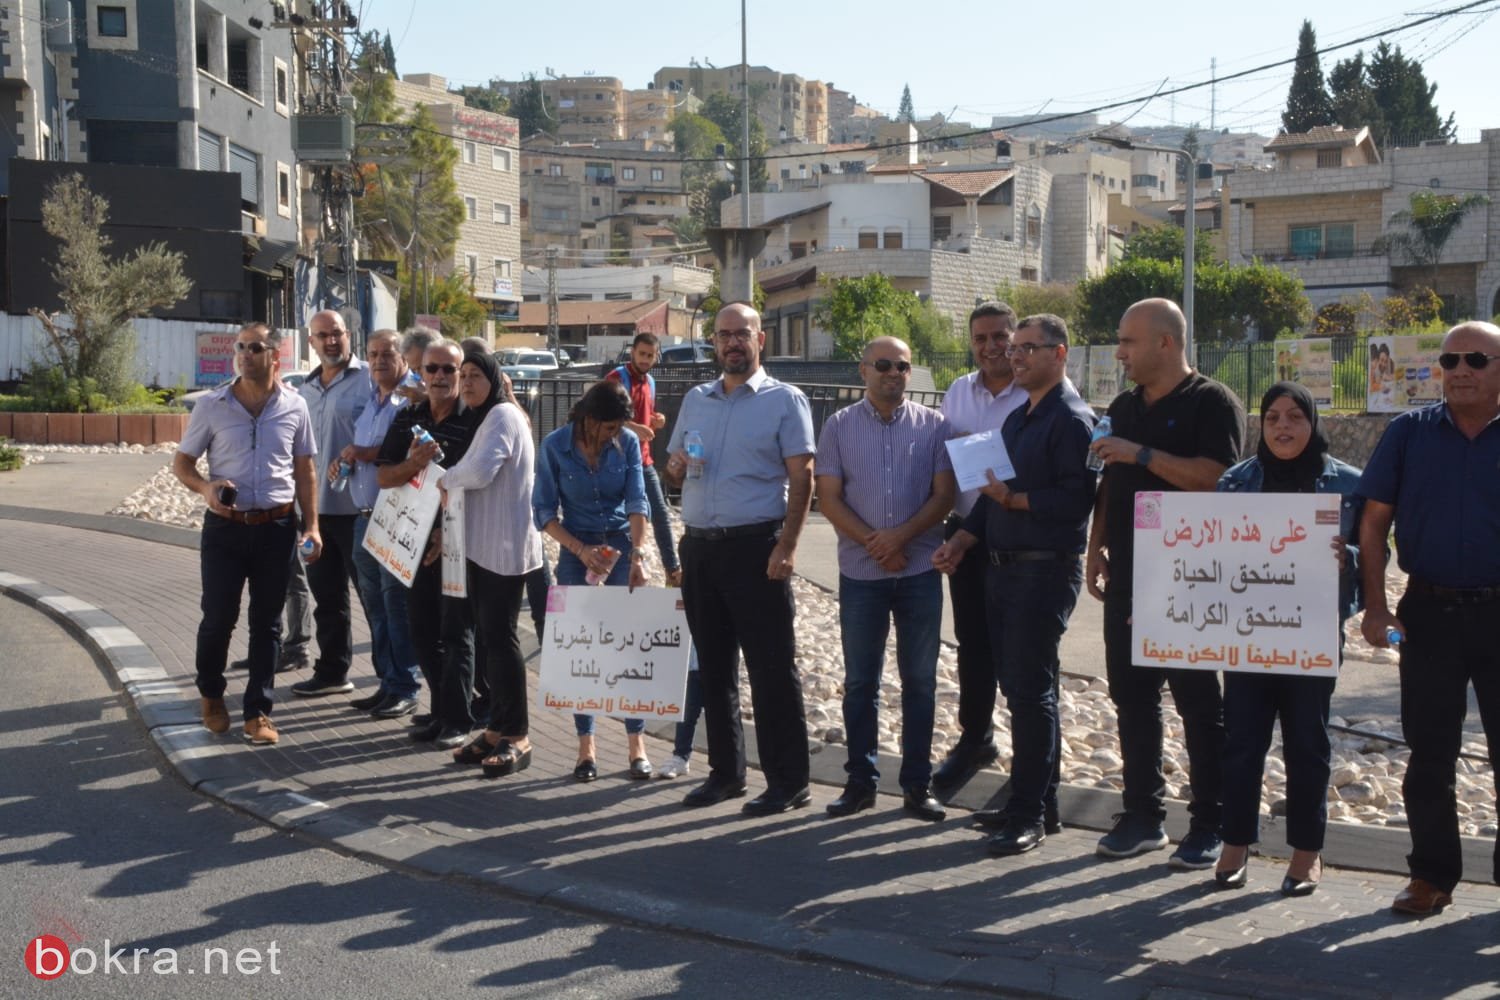 الرينة: موظفو وأعضاء المجلس يتظاهرون احتجاجًا على الاعتداء على زميلهم-15